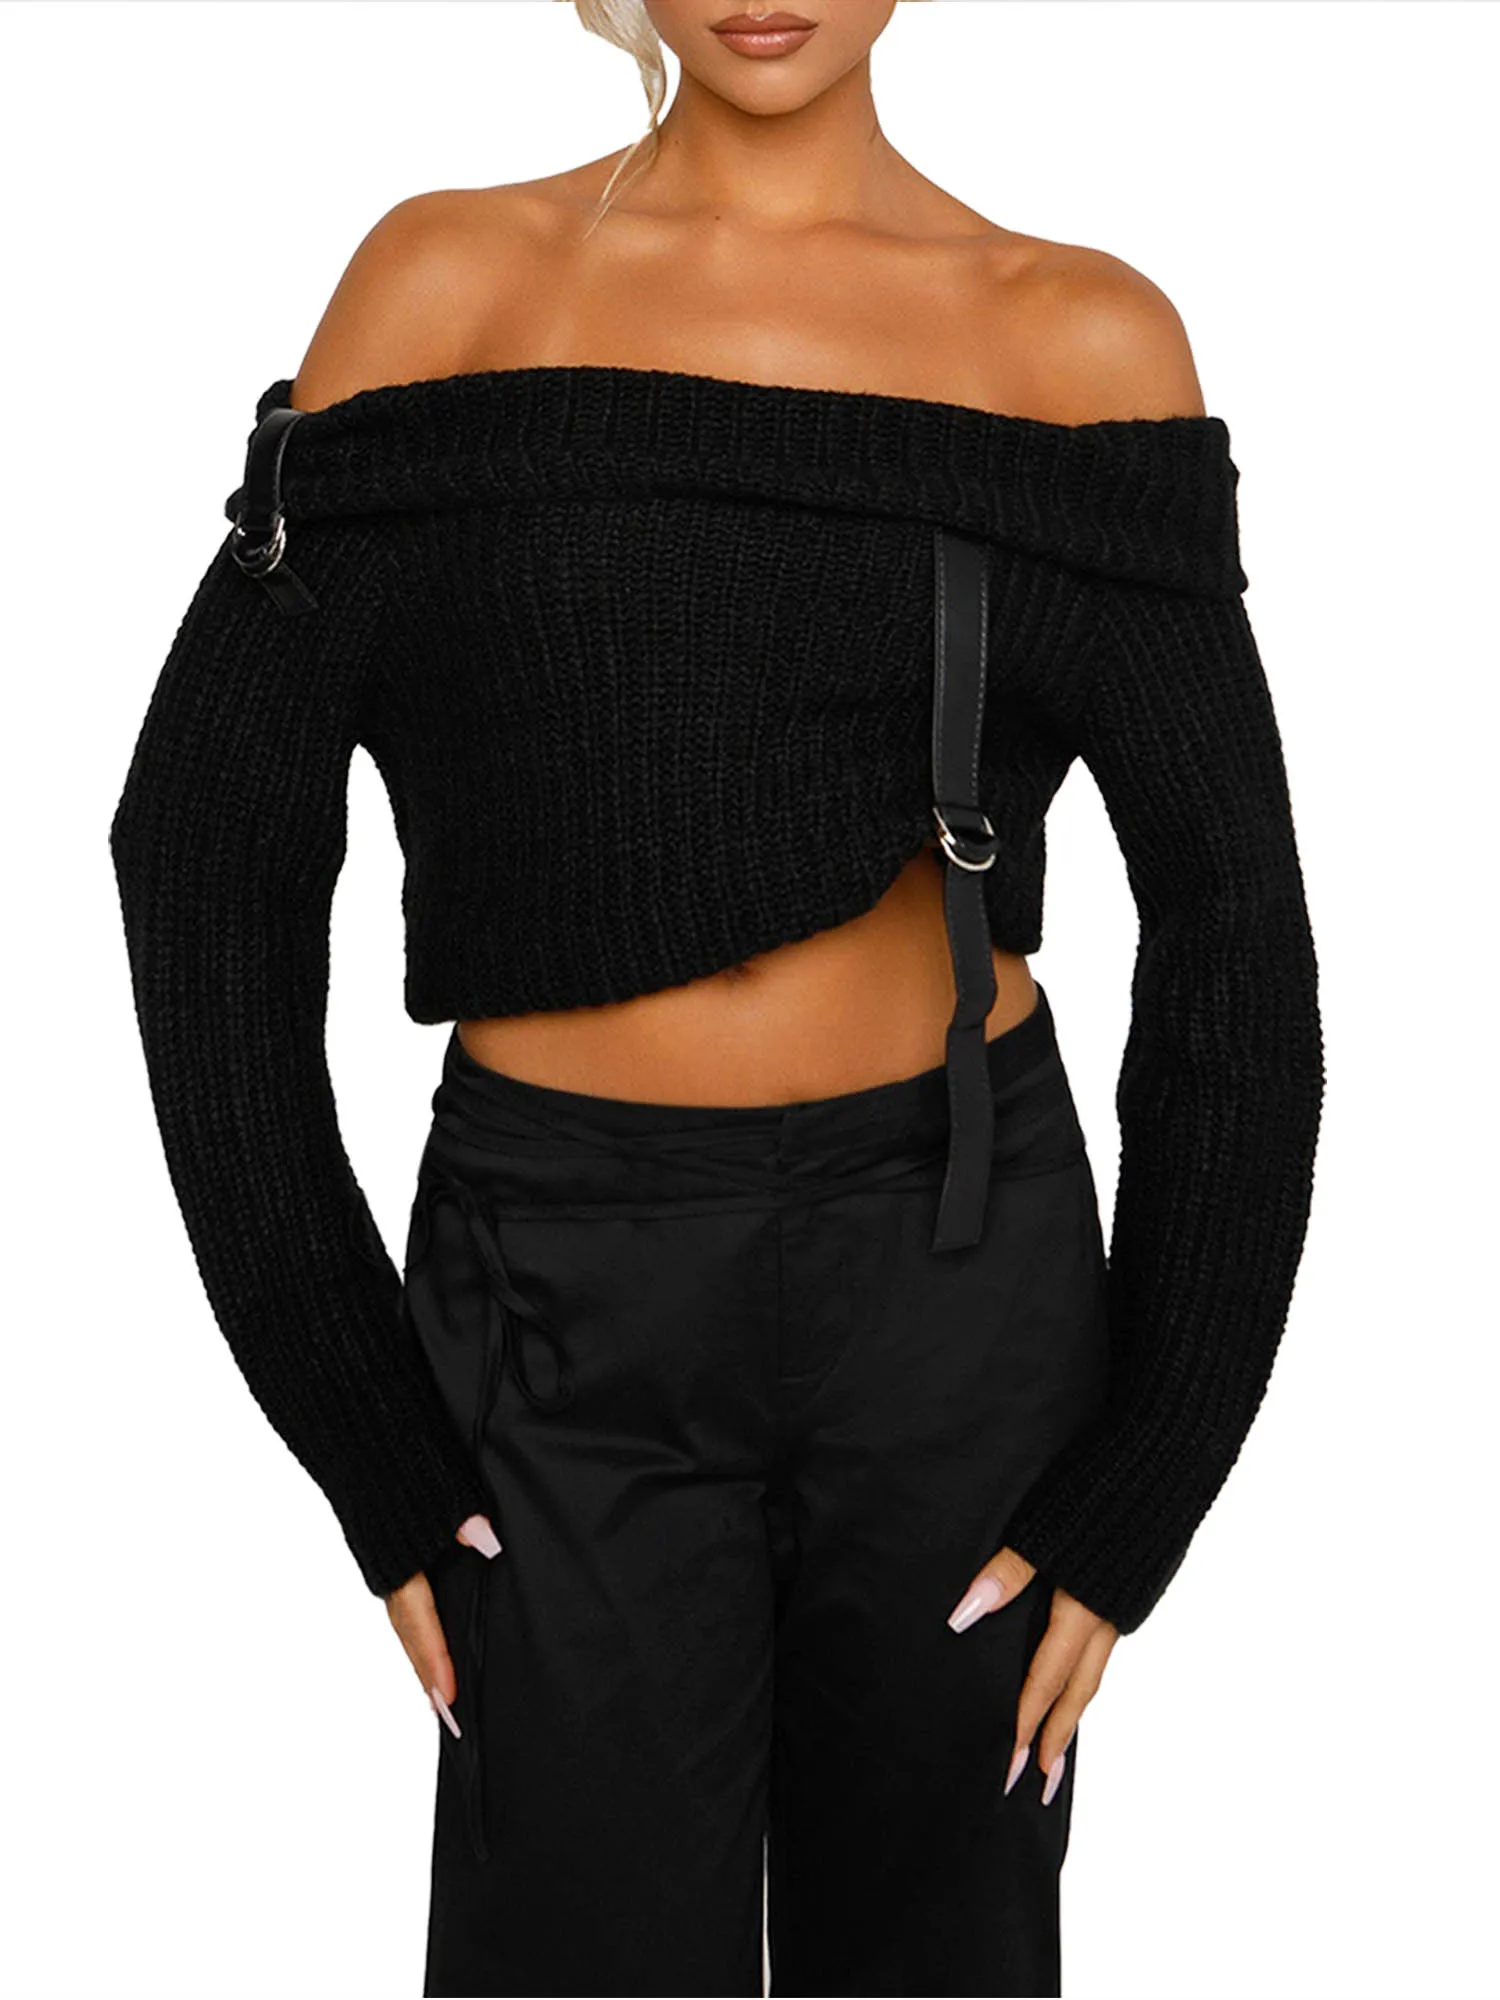 Женский вязаный свитер большого размера с поясом - Вырез лодочкой, пуловер с открытыми плечами и длинным рукавом для весны и осени - Модный